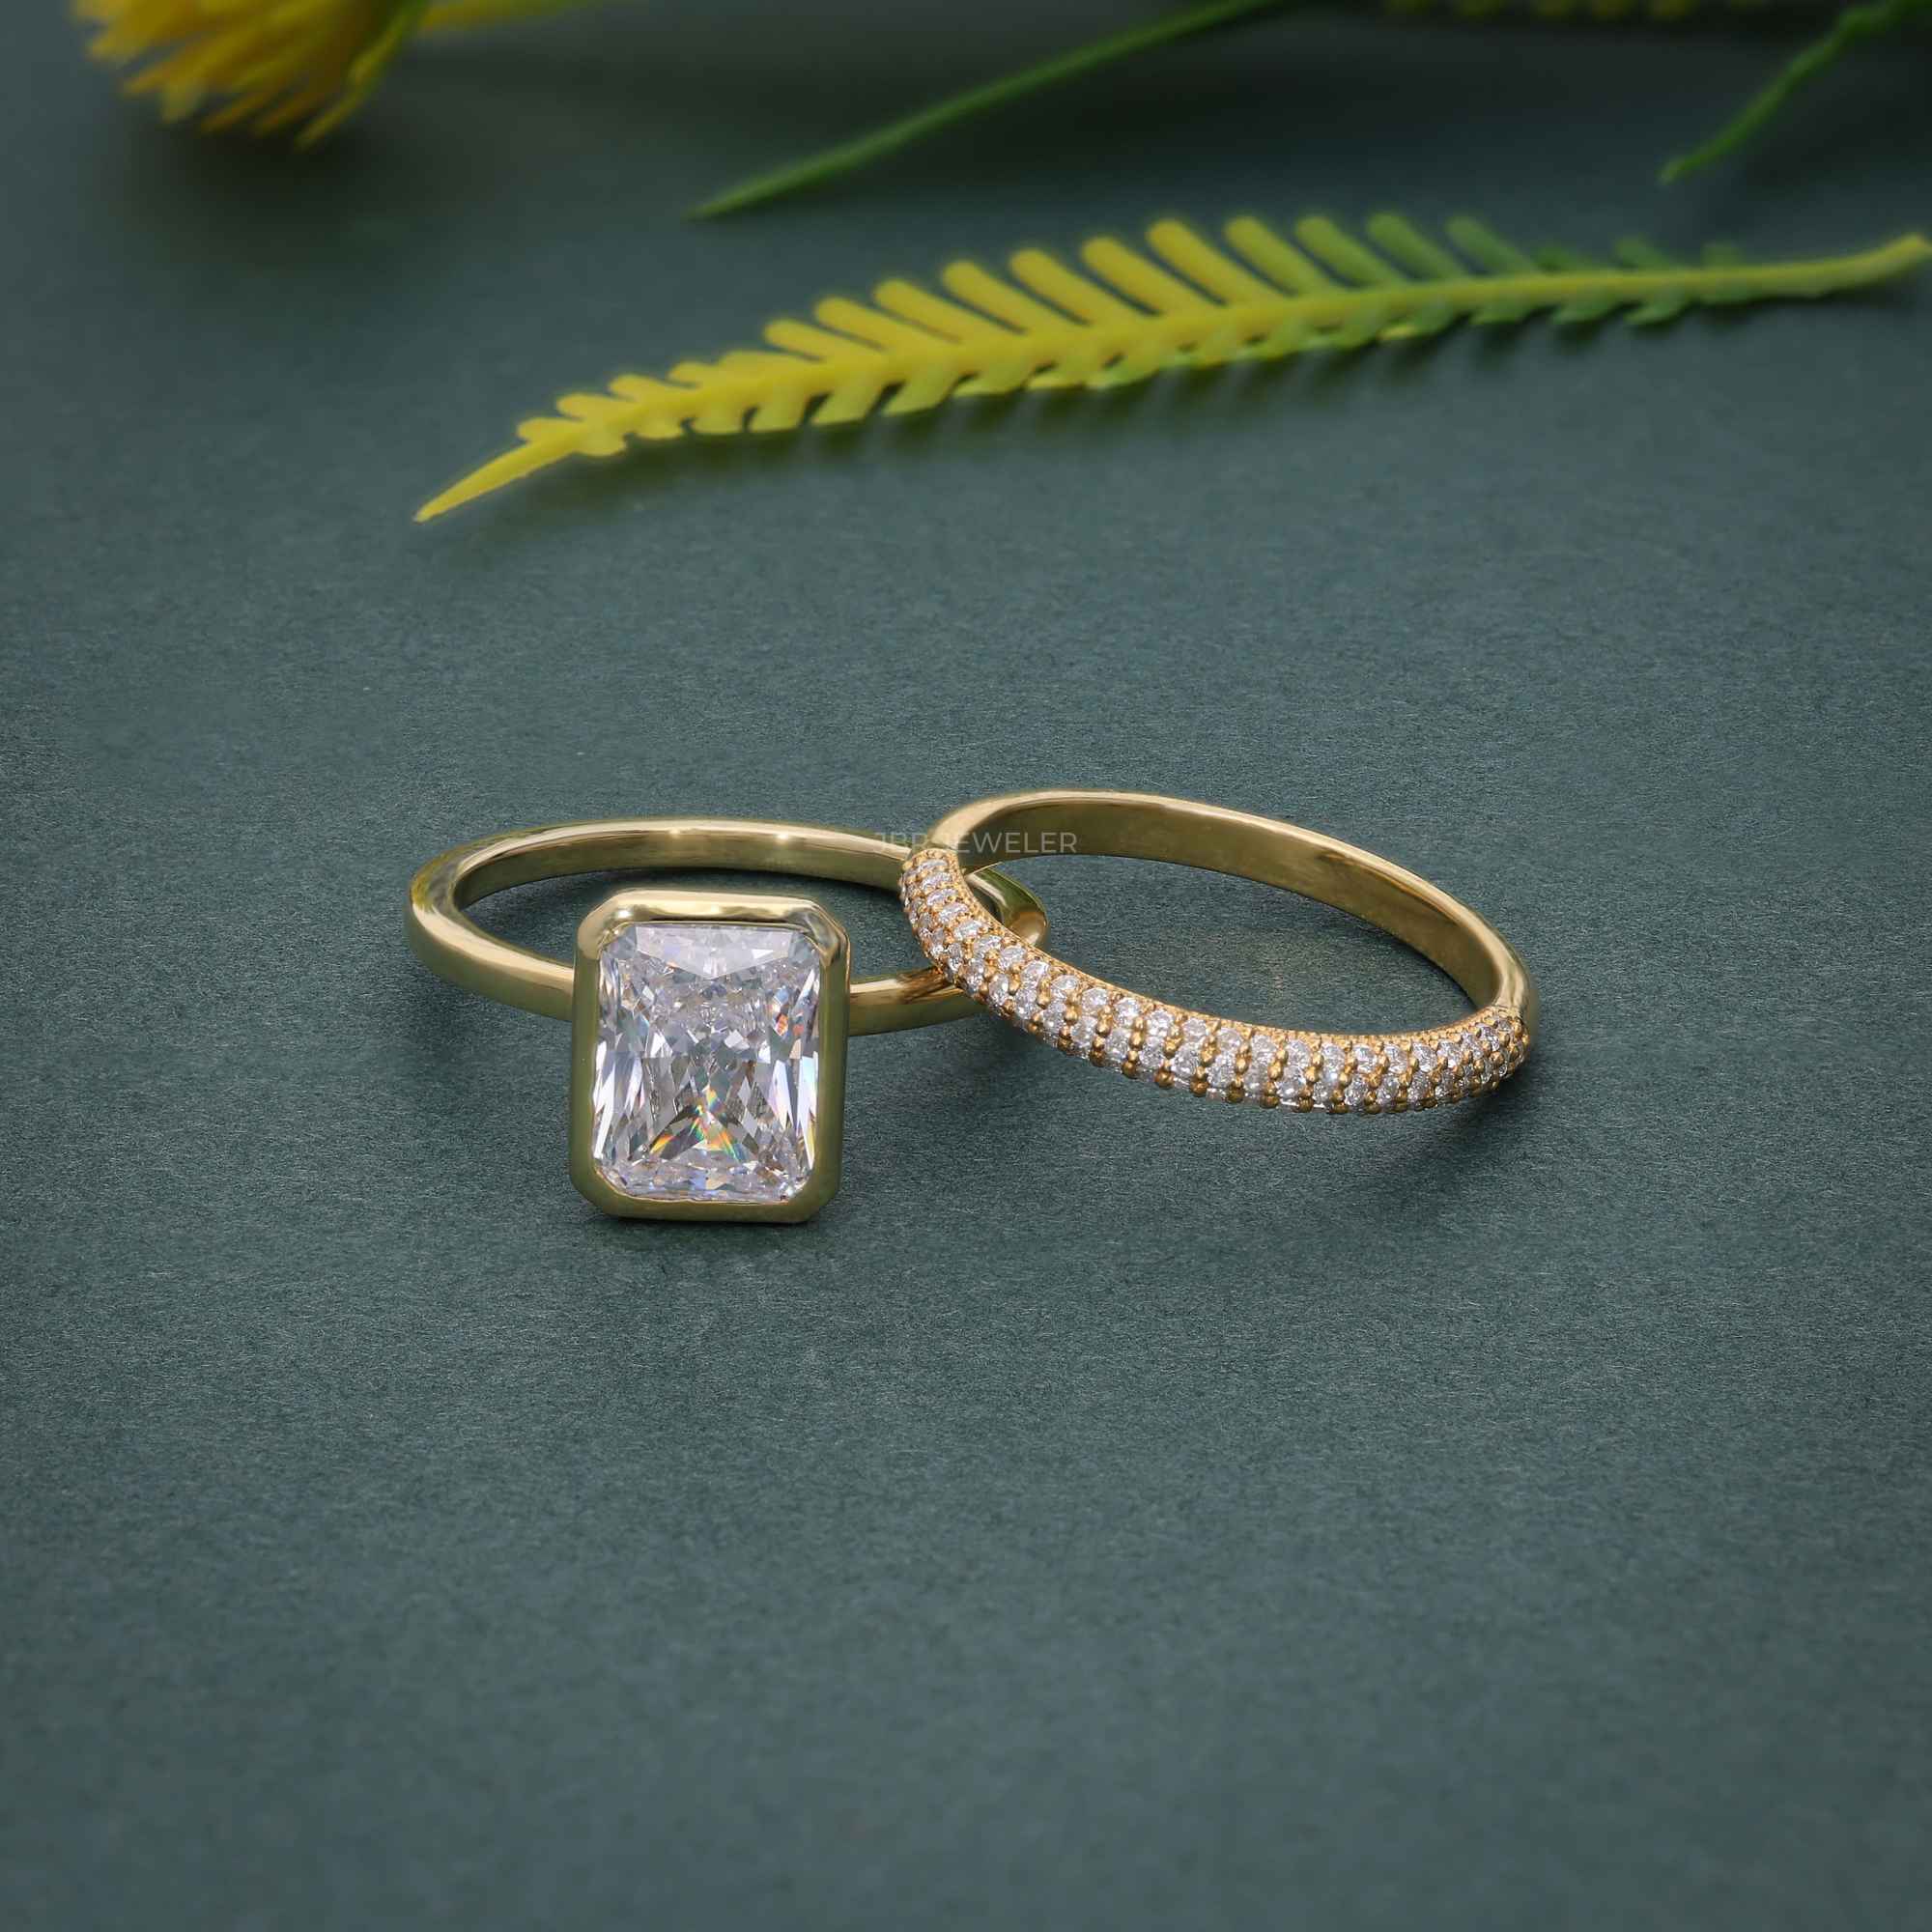 Bezel Set Radiant Cut Moissanite Diamond Bridal Set Ring With Wedding Band